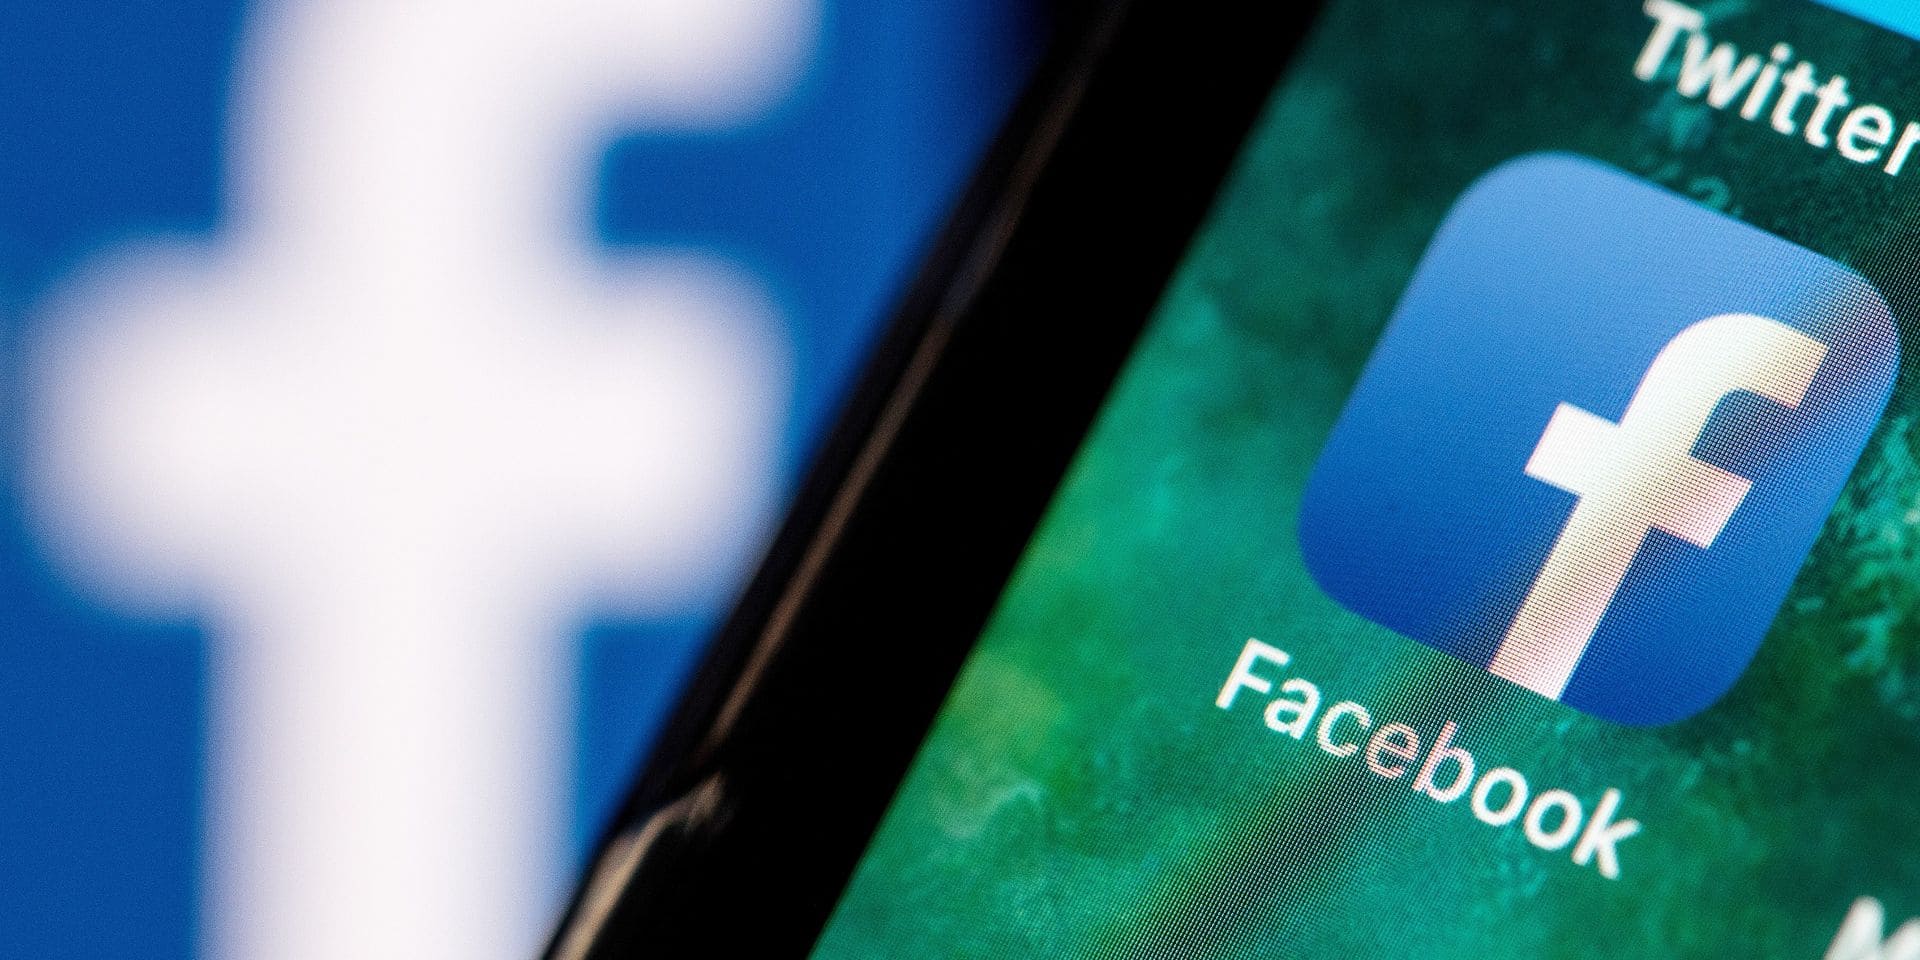 اتهامات جديدة بالعنصرية لـ”فيسبوك” والإدارة تعتذر عن خطأ الخوارزمية